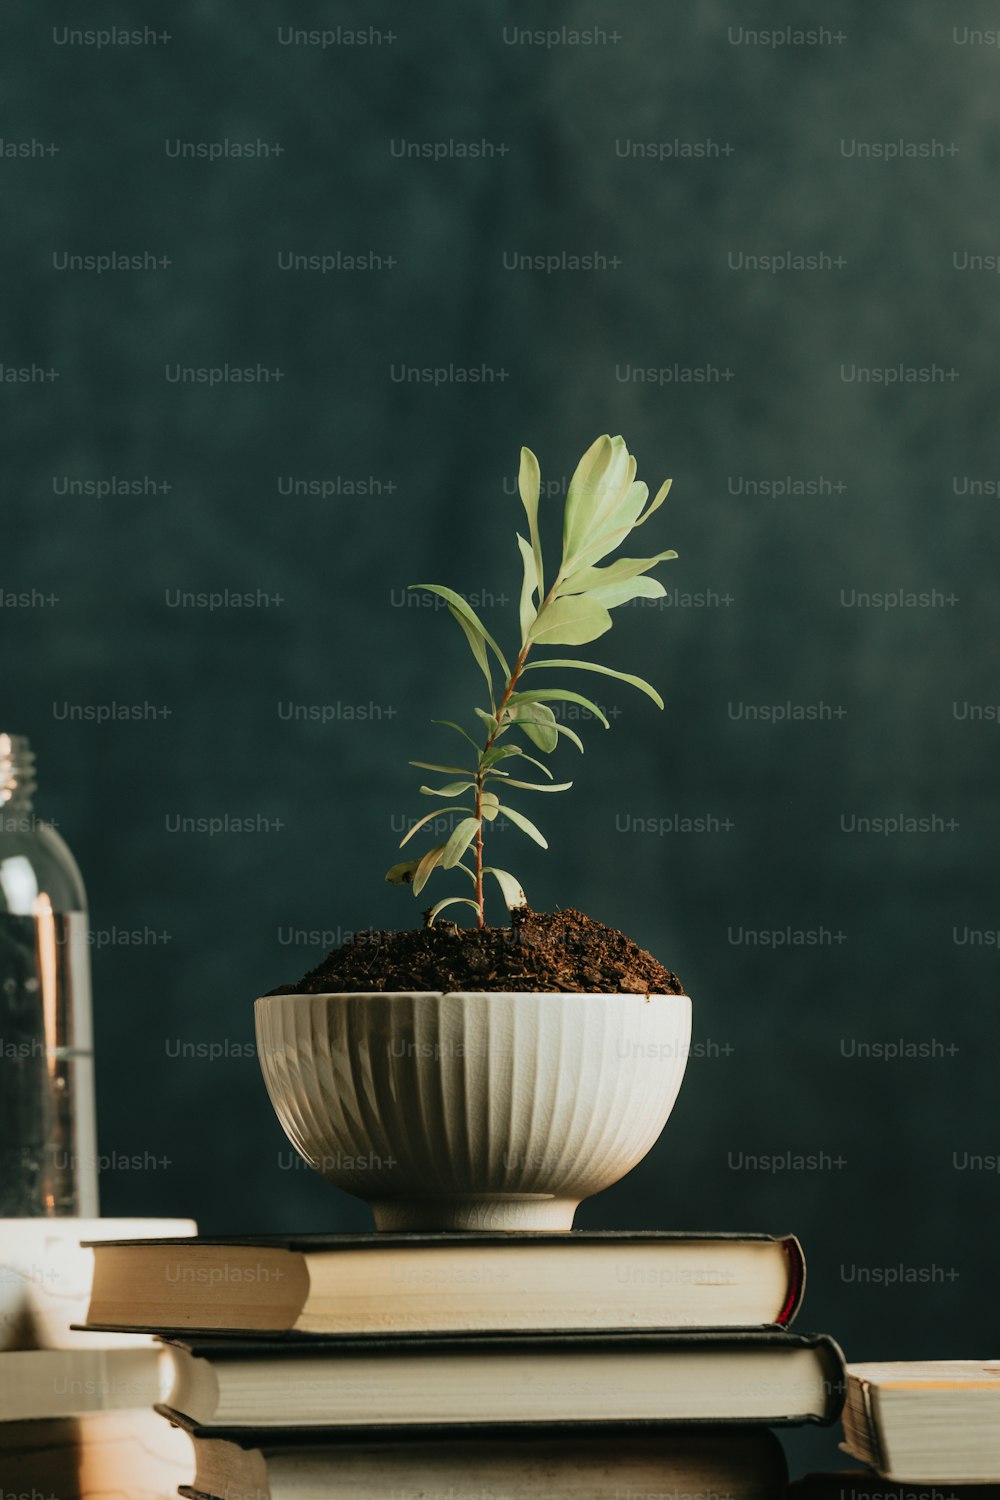 Eine kleine Pflanze in einer weißen Schale auf einem Stapel Bücher